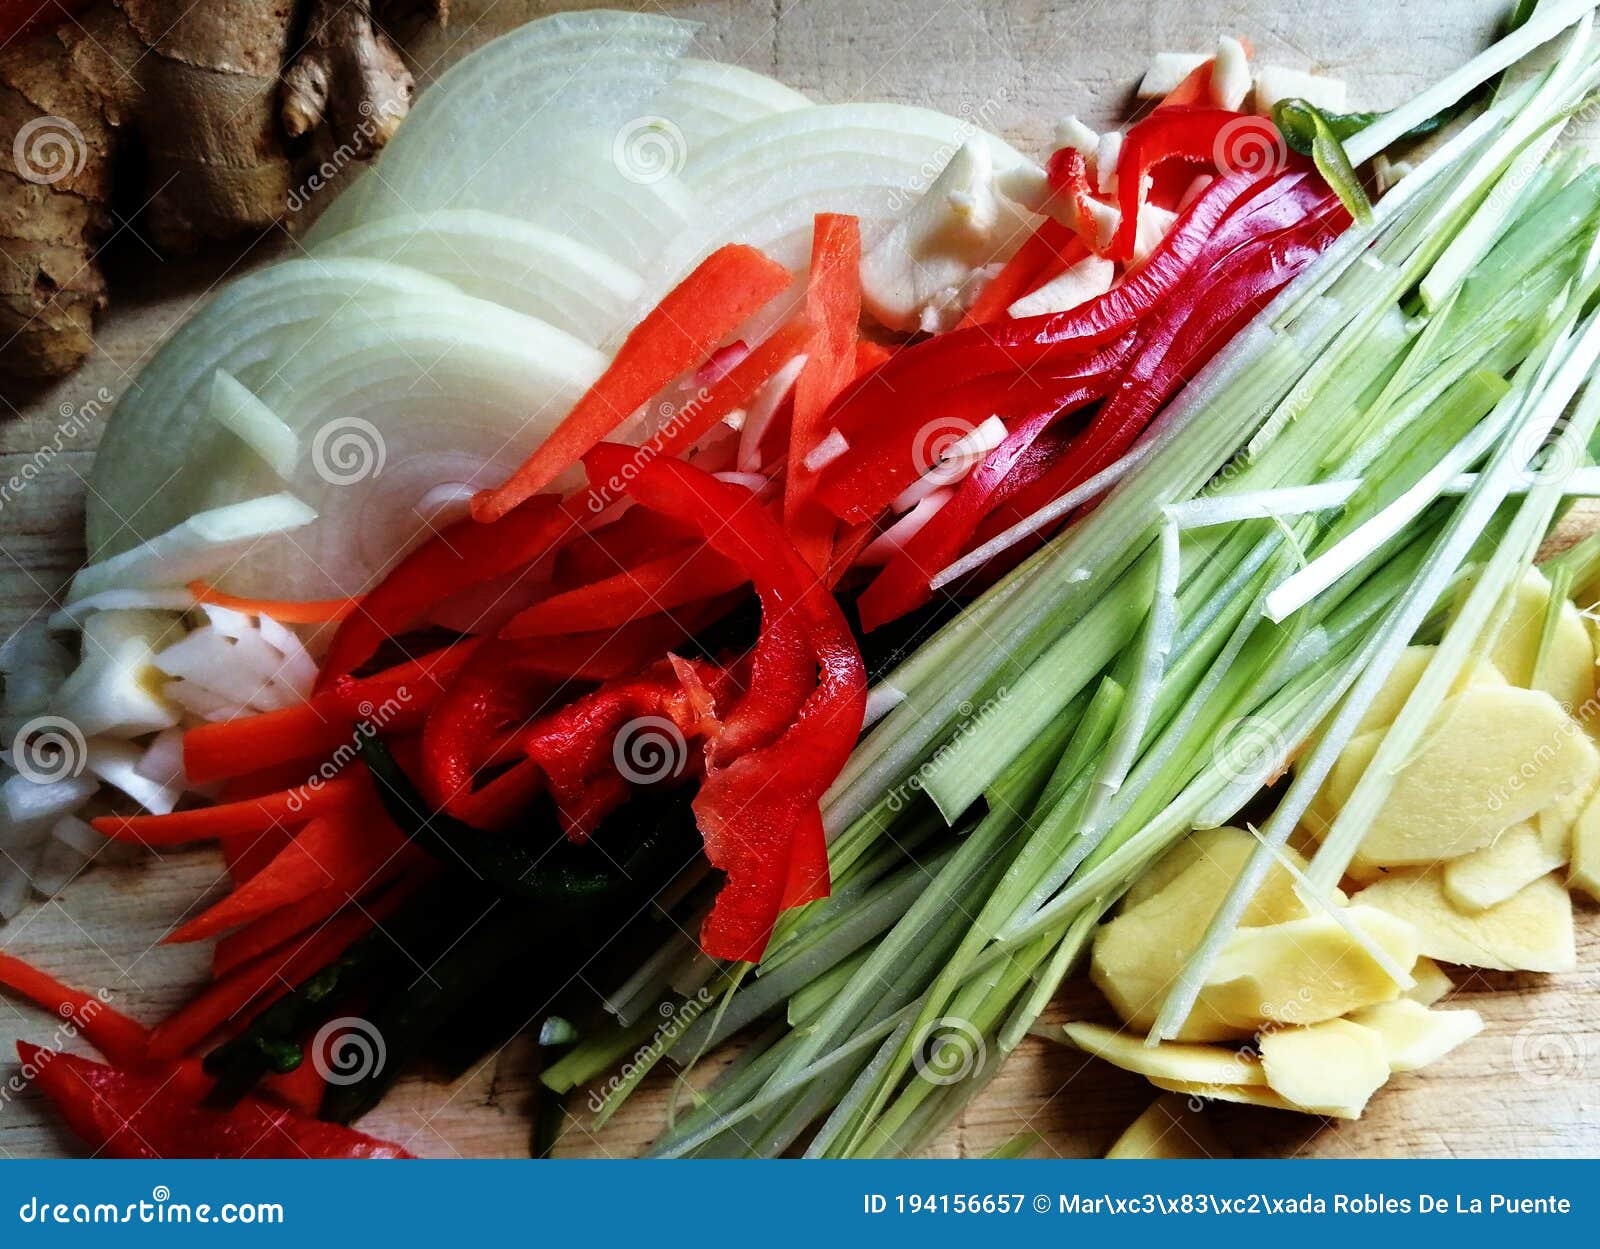 verduras lavadas y cortadas para cocinar